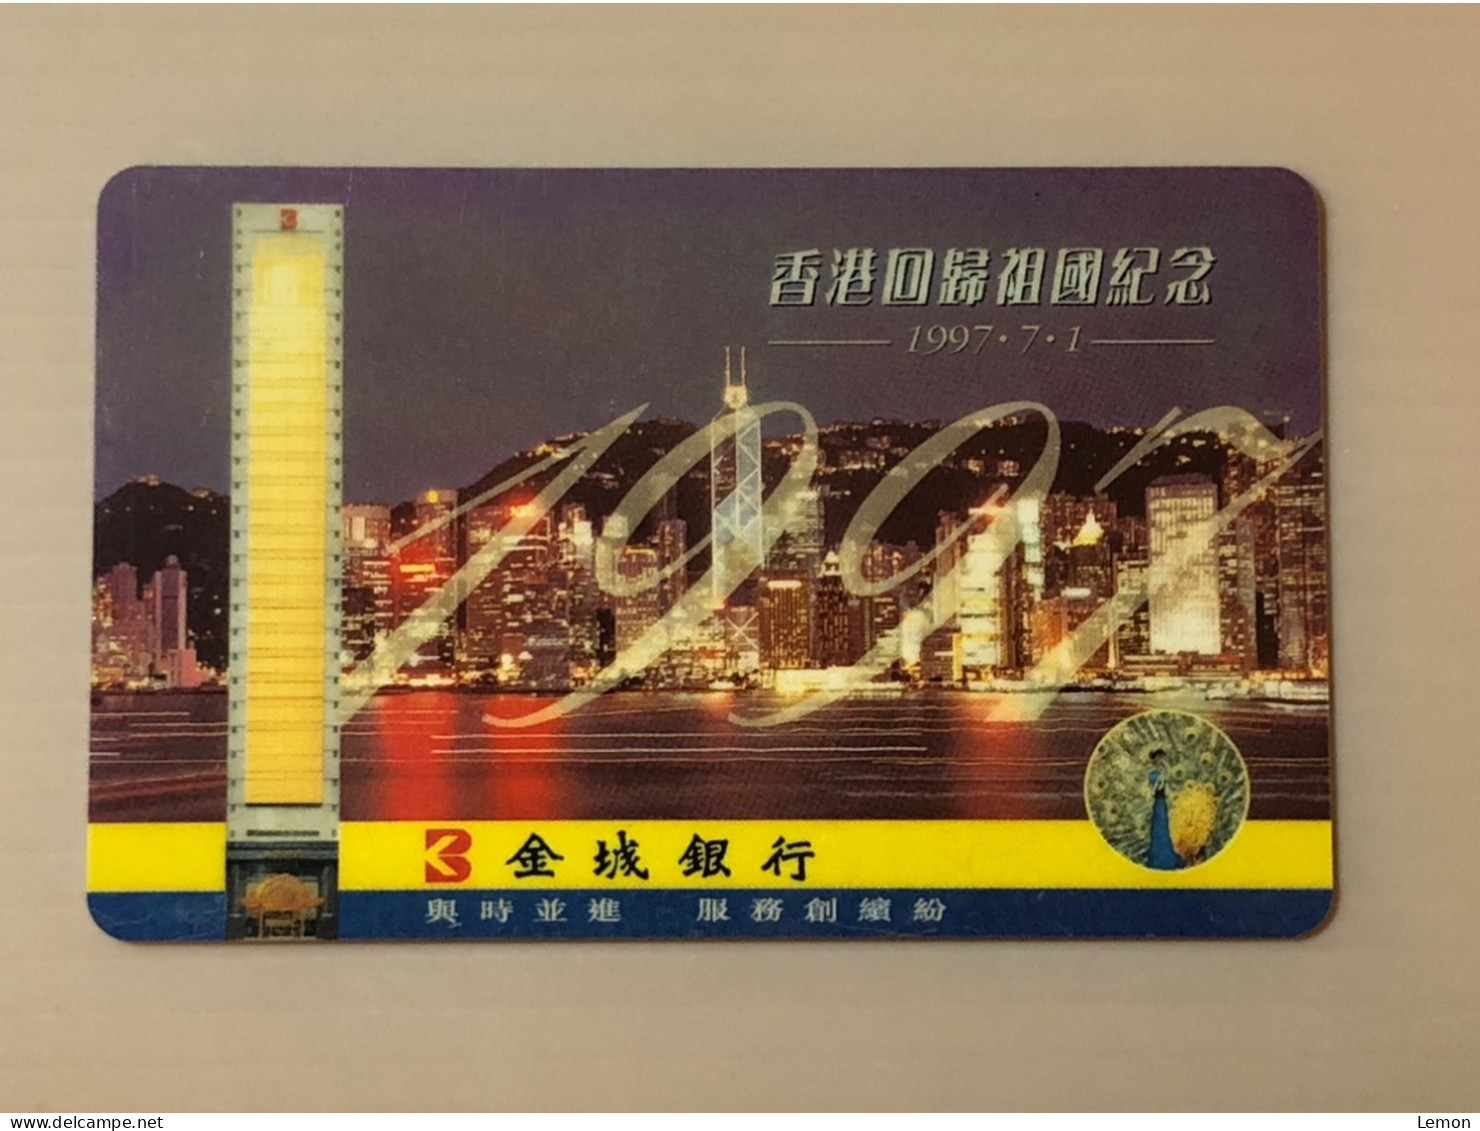 Hong Kong Telecom Prepaid Telecard Phonecard, Hong Kong Return To China - Jincheng Bank, Set Of 1 Used Card - Hongkong